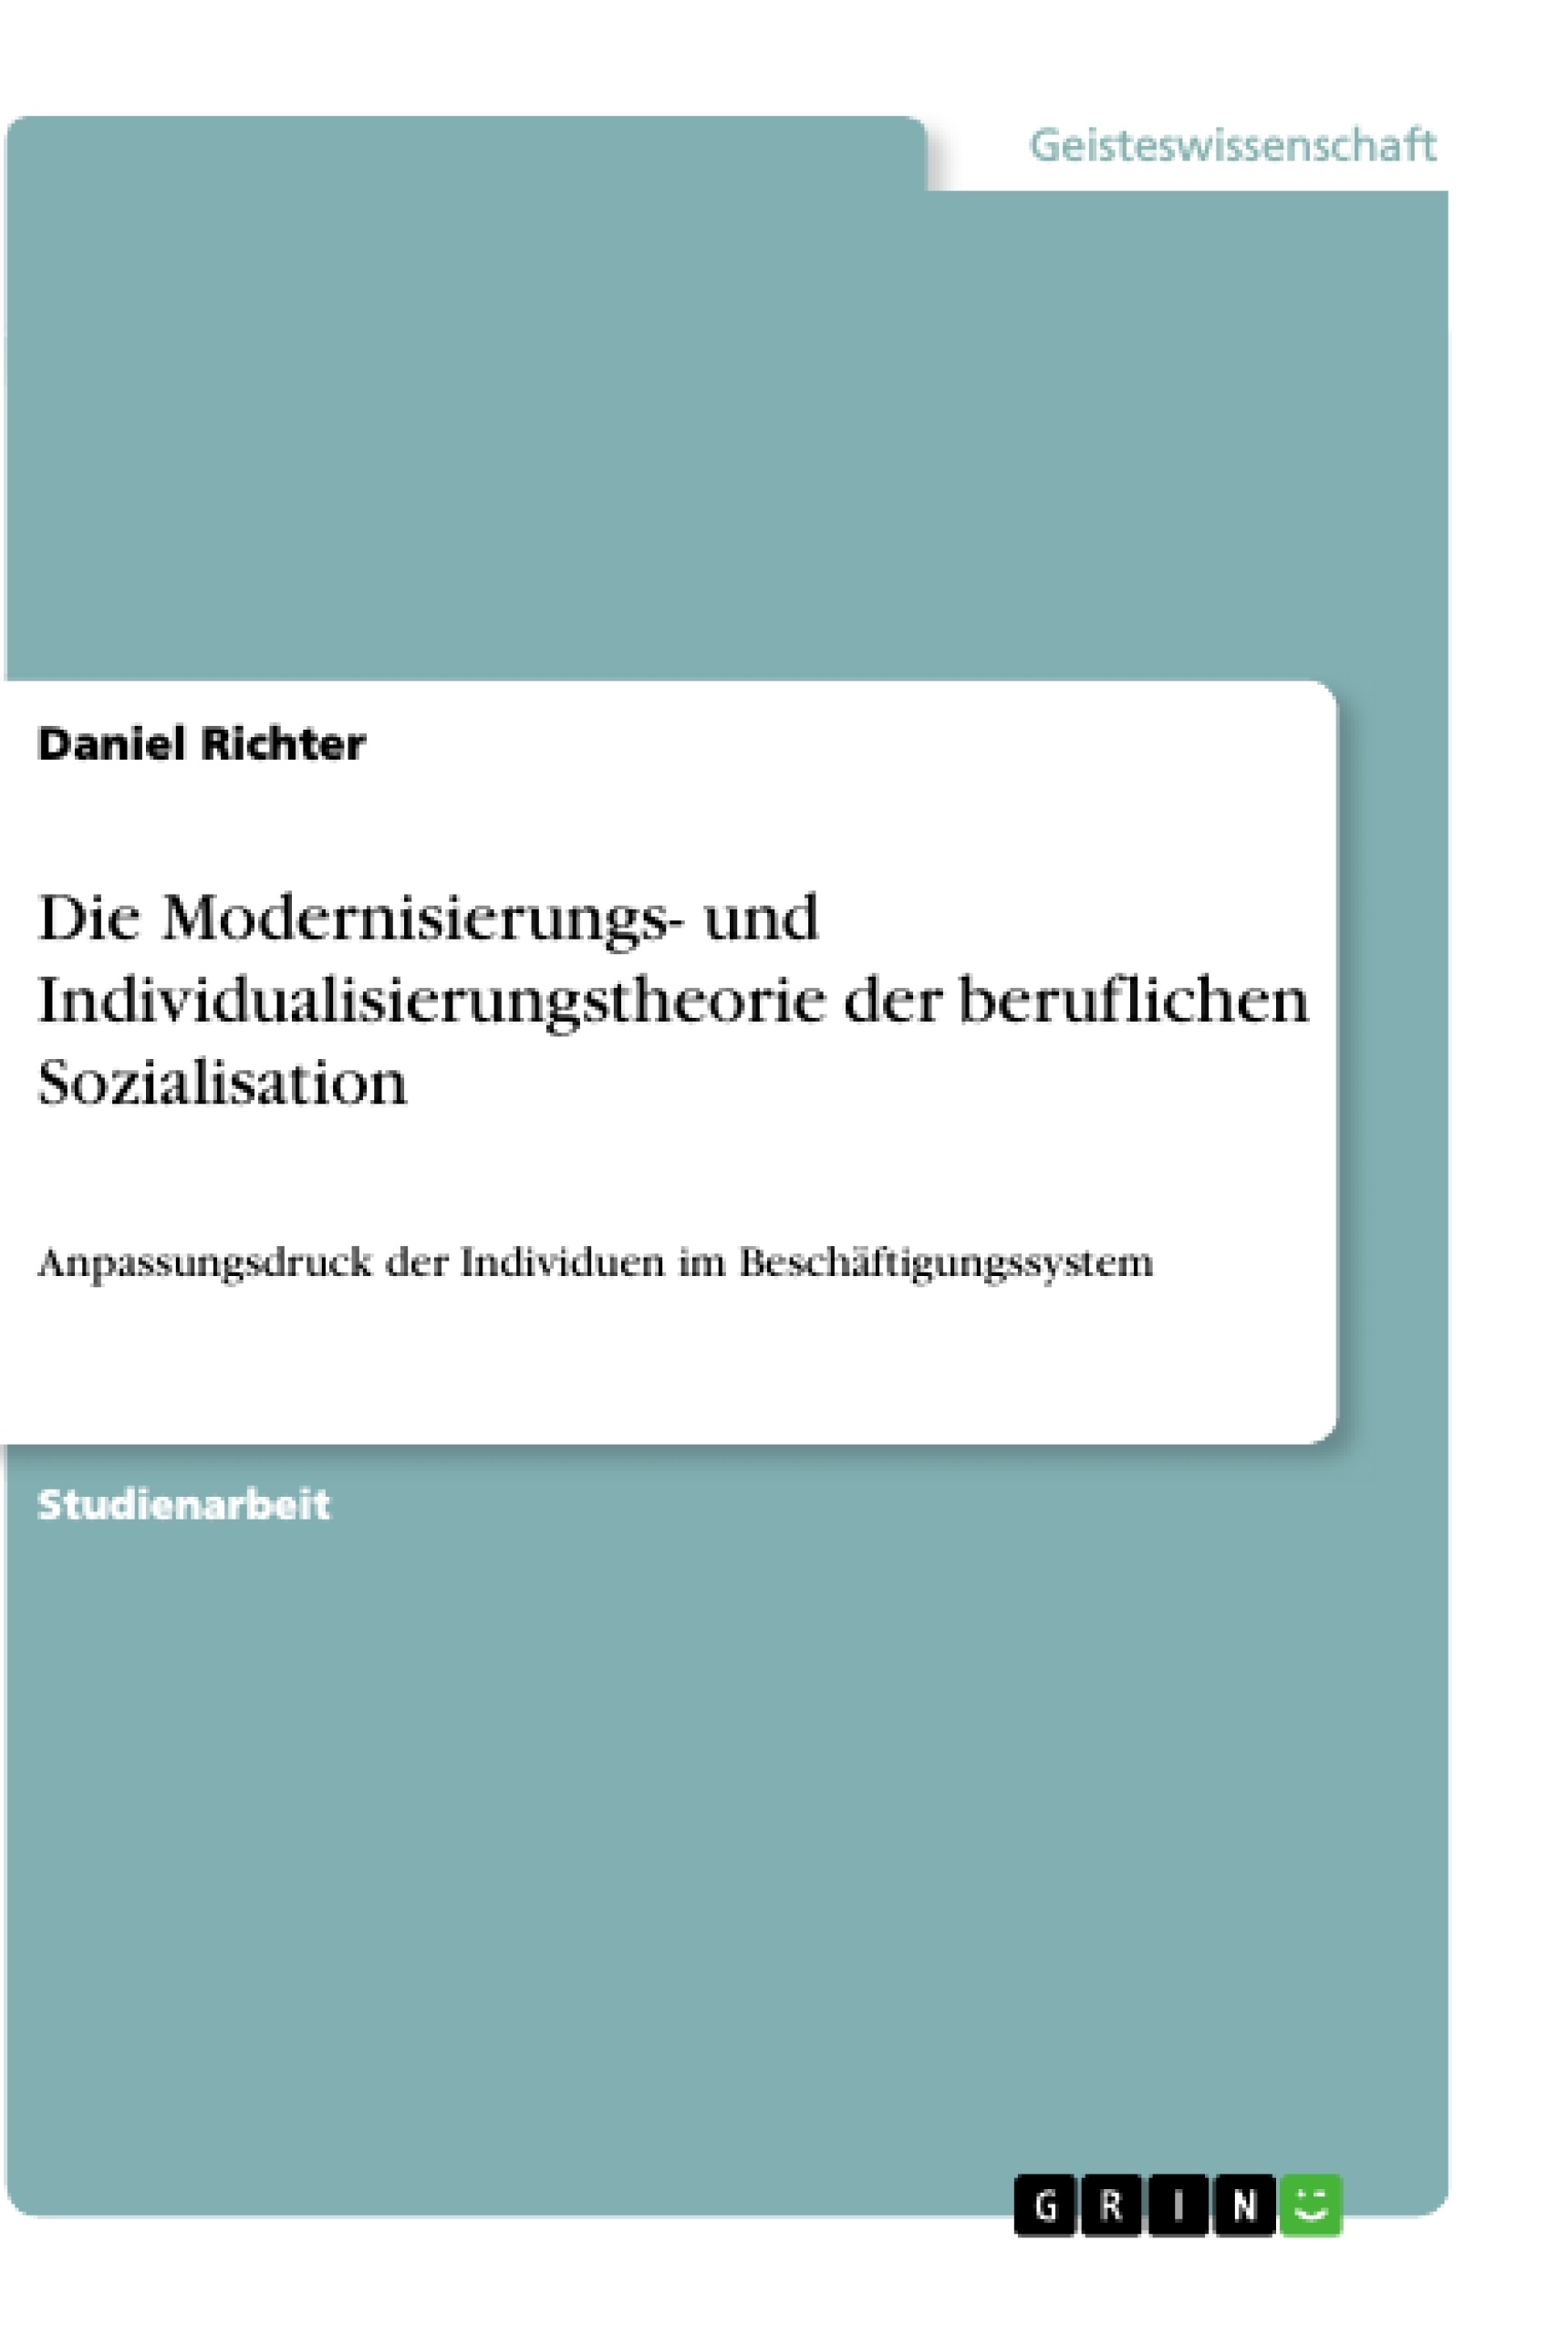 Title: Die Modernisierungs- und Individualisierungstheorie der beruflichen Sozialisation